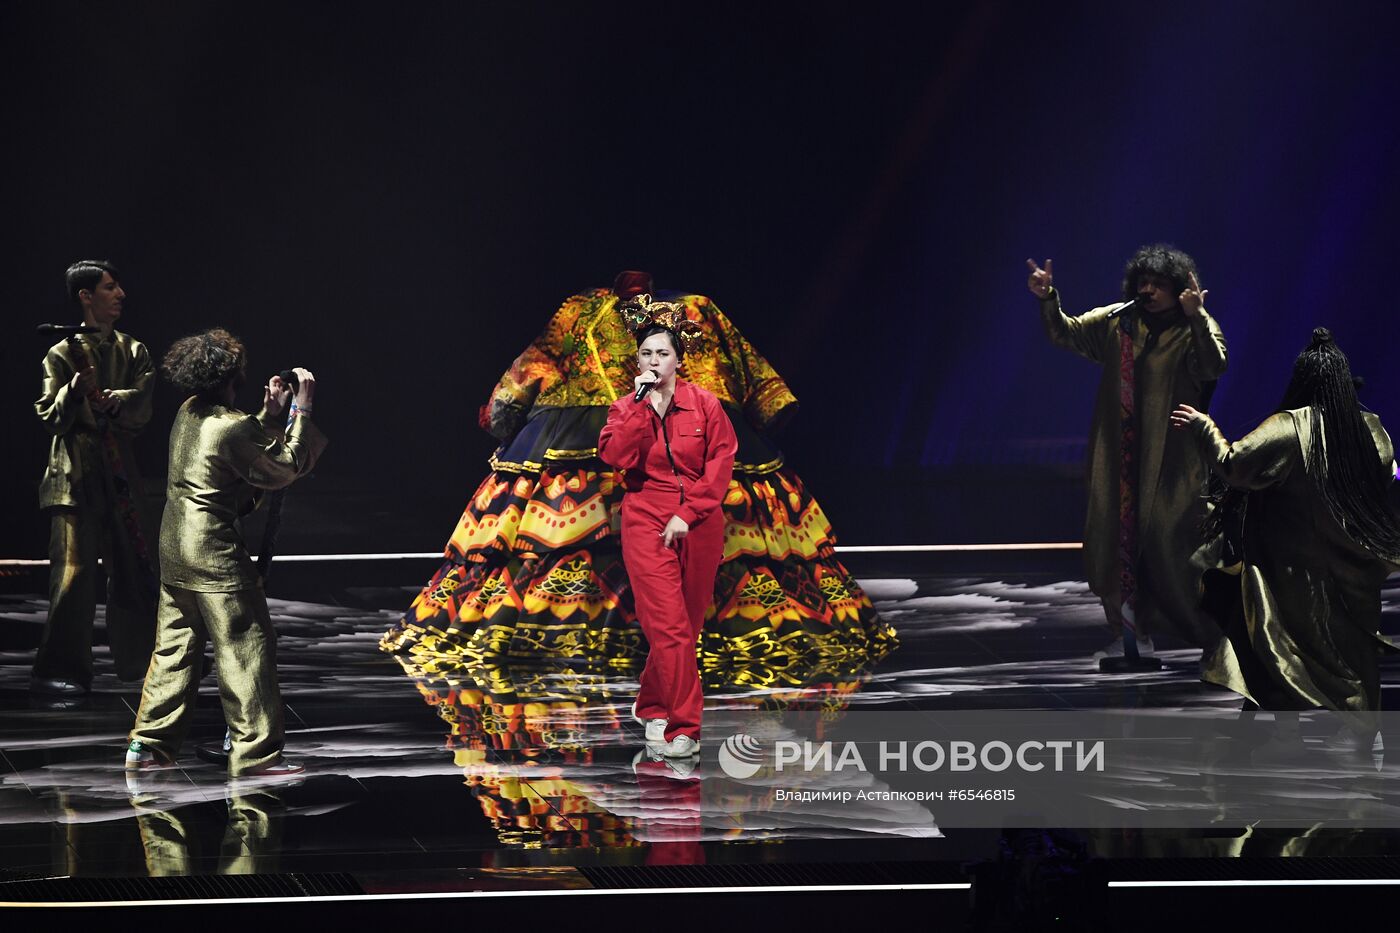 Репетиция первого полуфинала конкурса "Евровидение-2021"